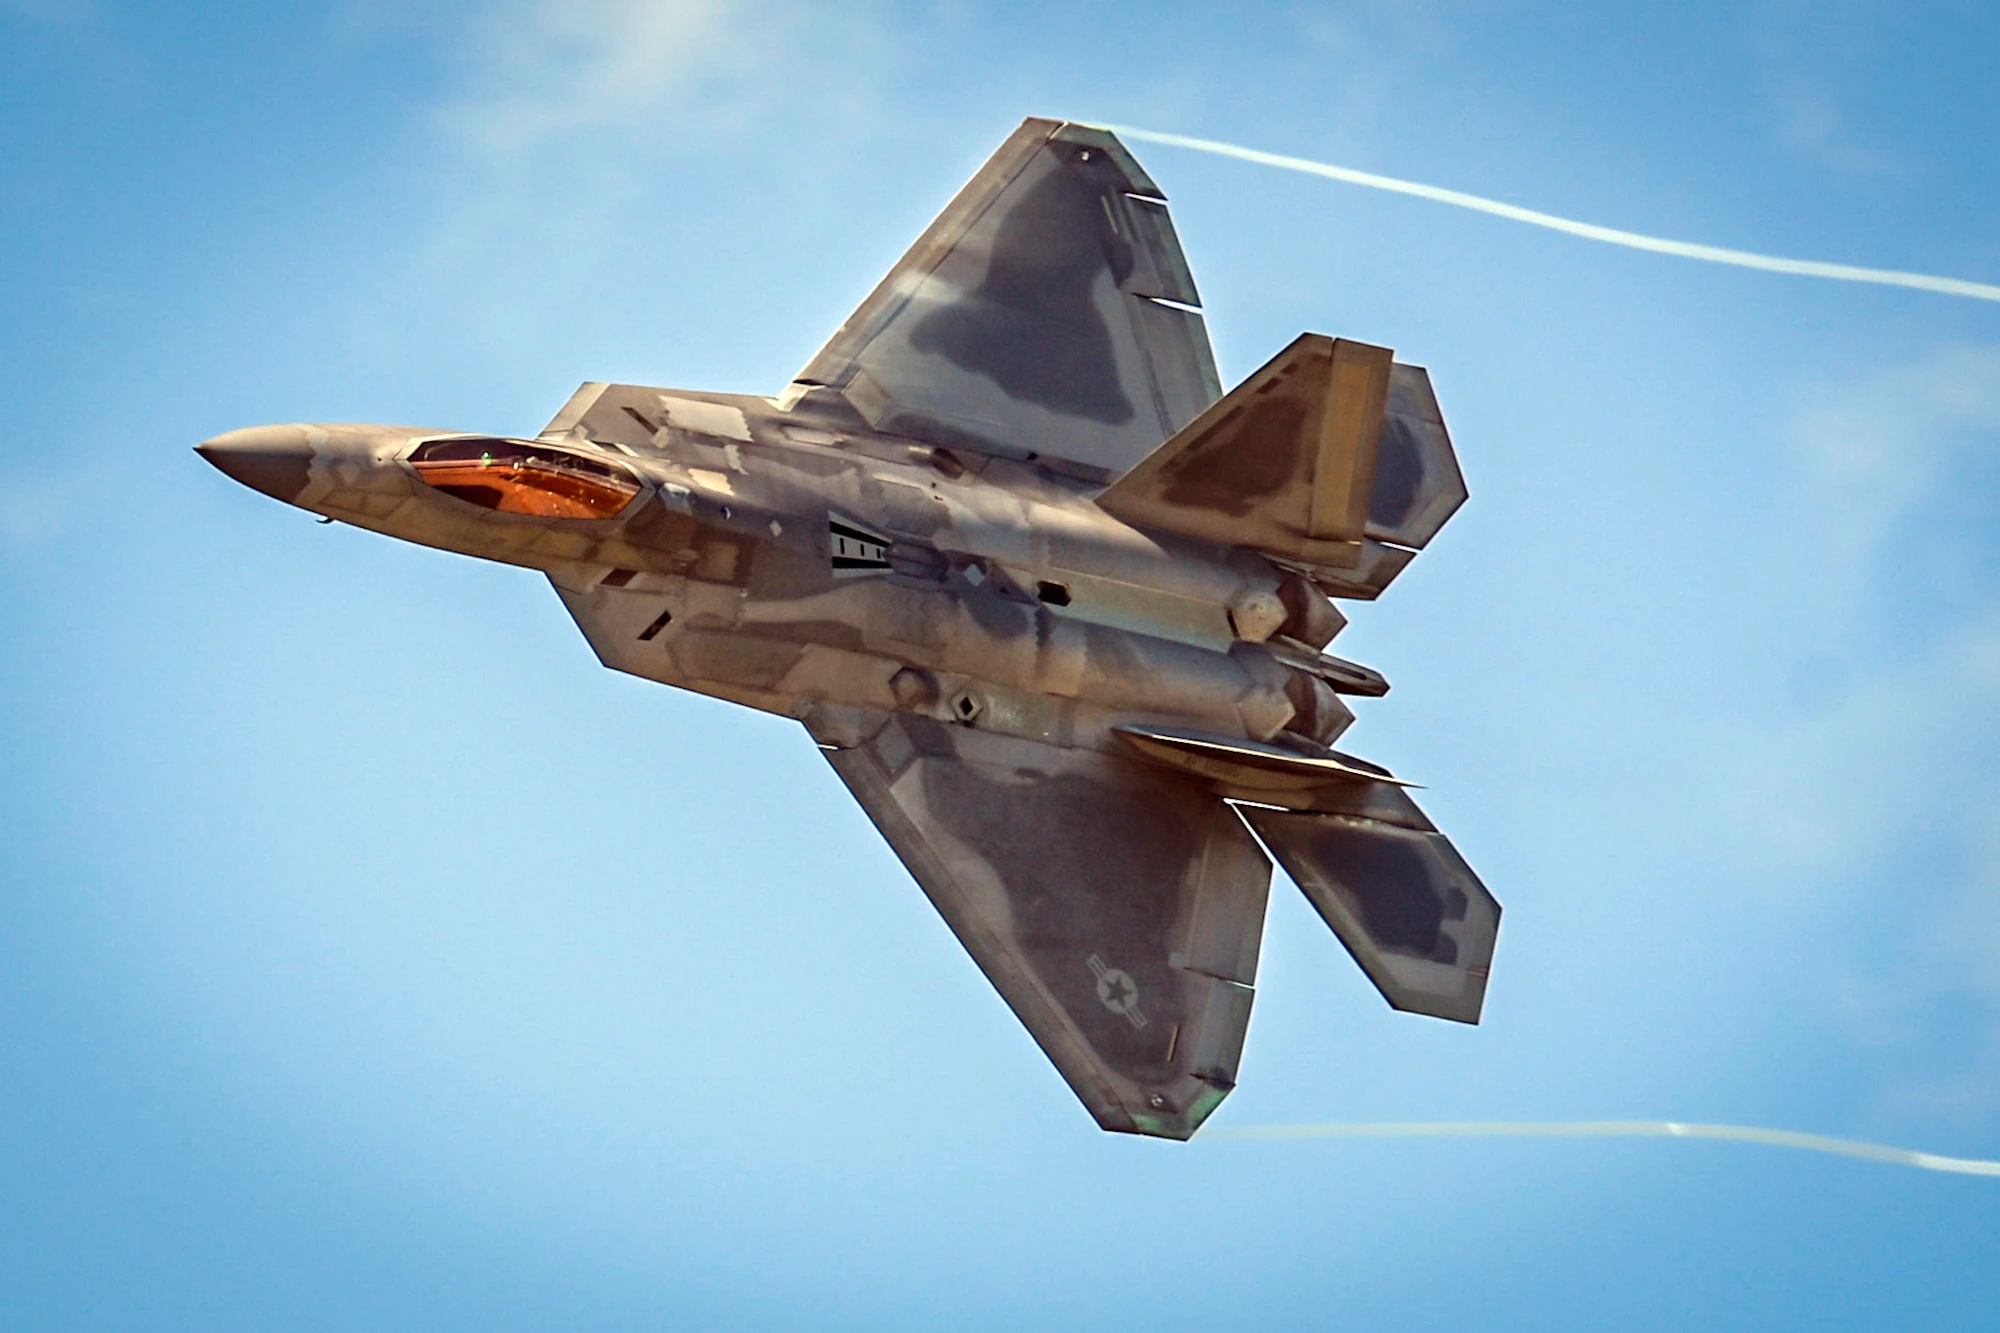 Trung Quốc đánh cắp công nghệ F-22 Raptor của Mỹ để phát triển máy bay chiến đấu tàng hình J-20